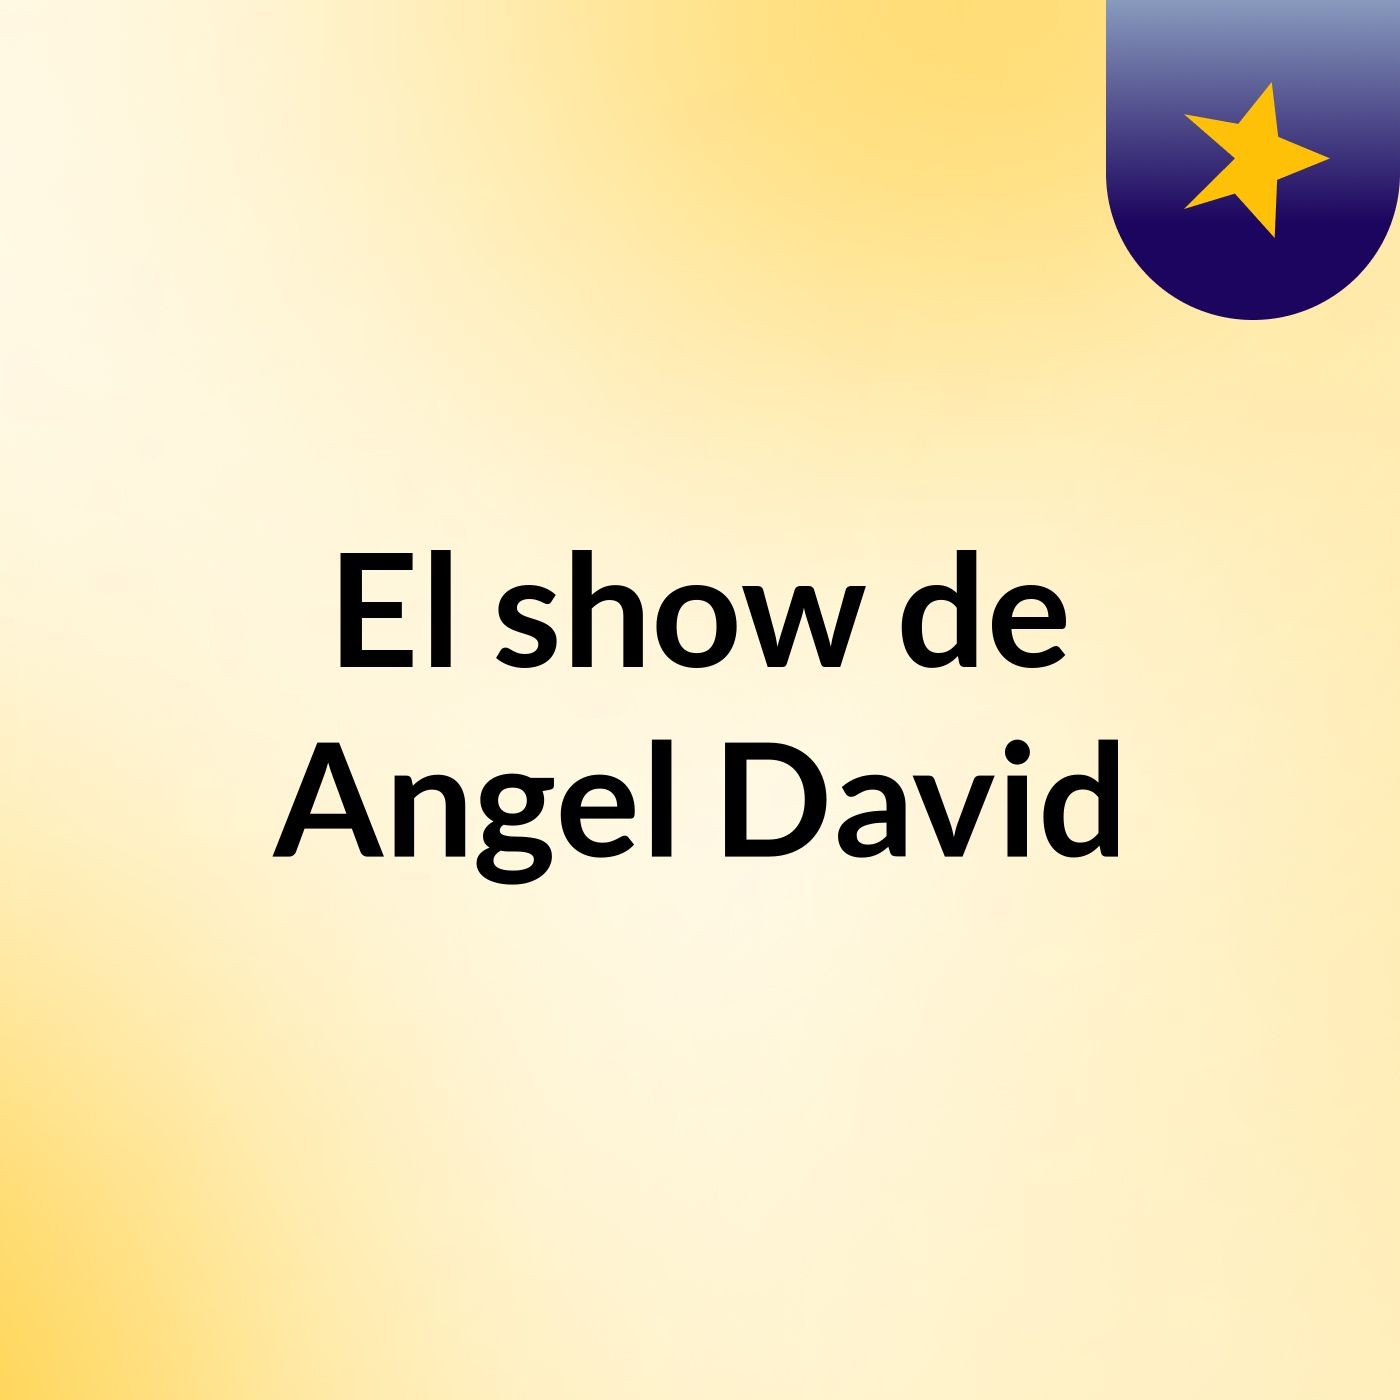 El show de Angel David